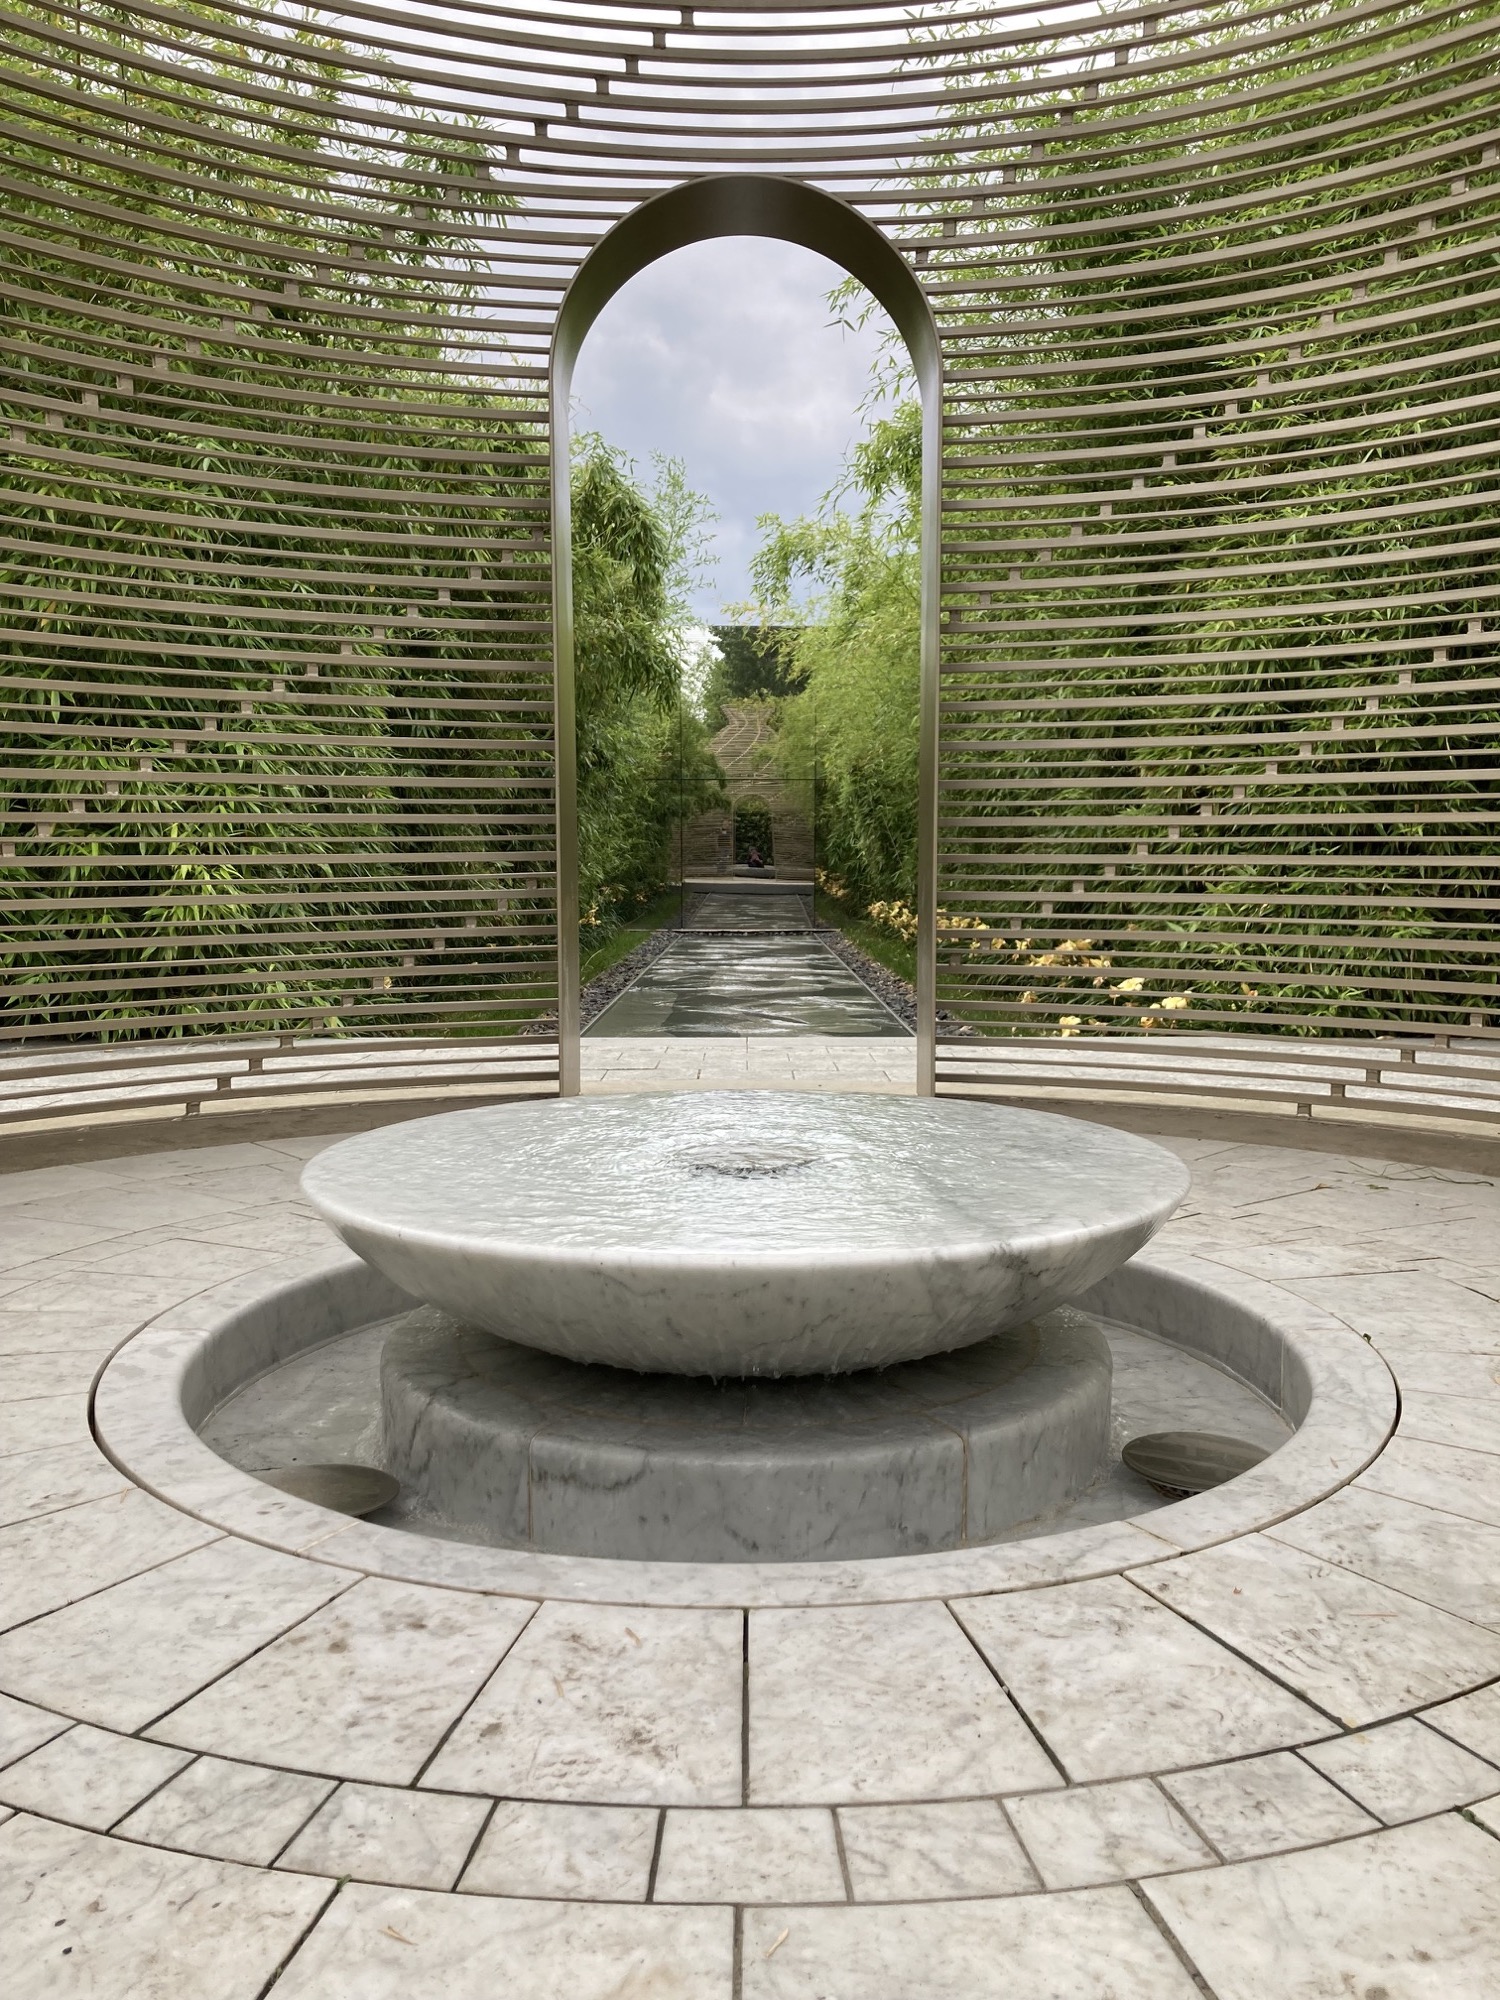 Gärten der Welt: chinesischer Garten mit Brunnen, Bienenstockdach, Wasserfläche und Spiegel